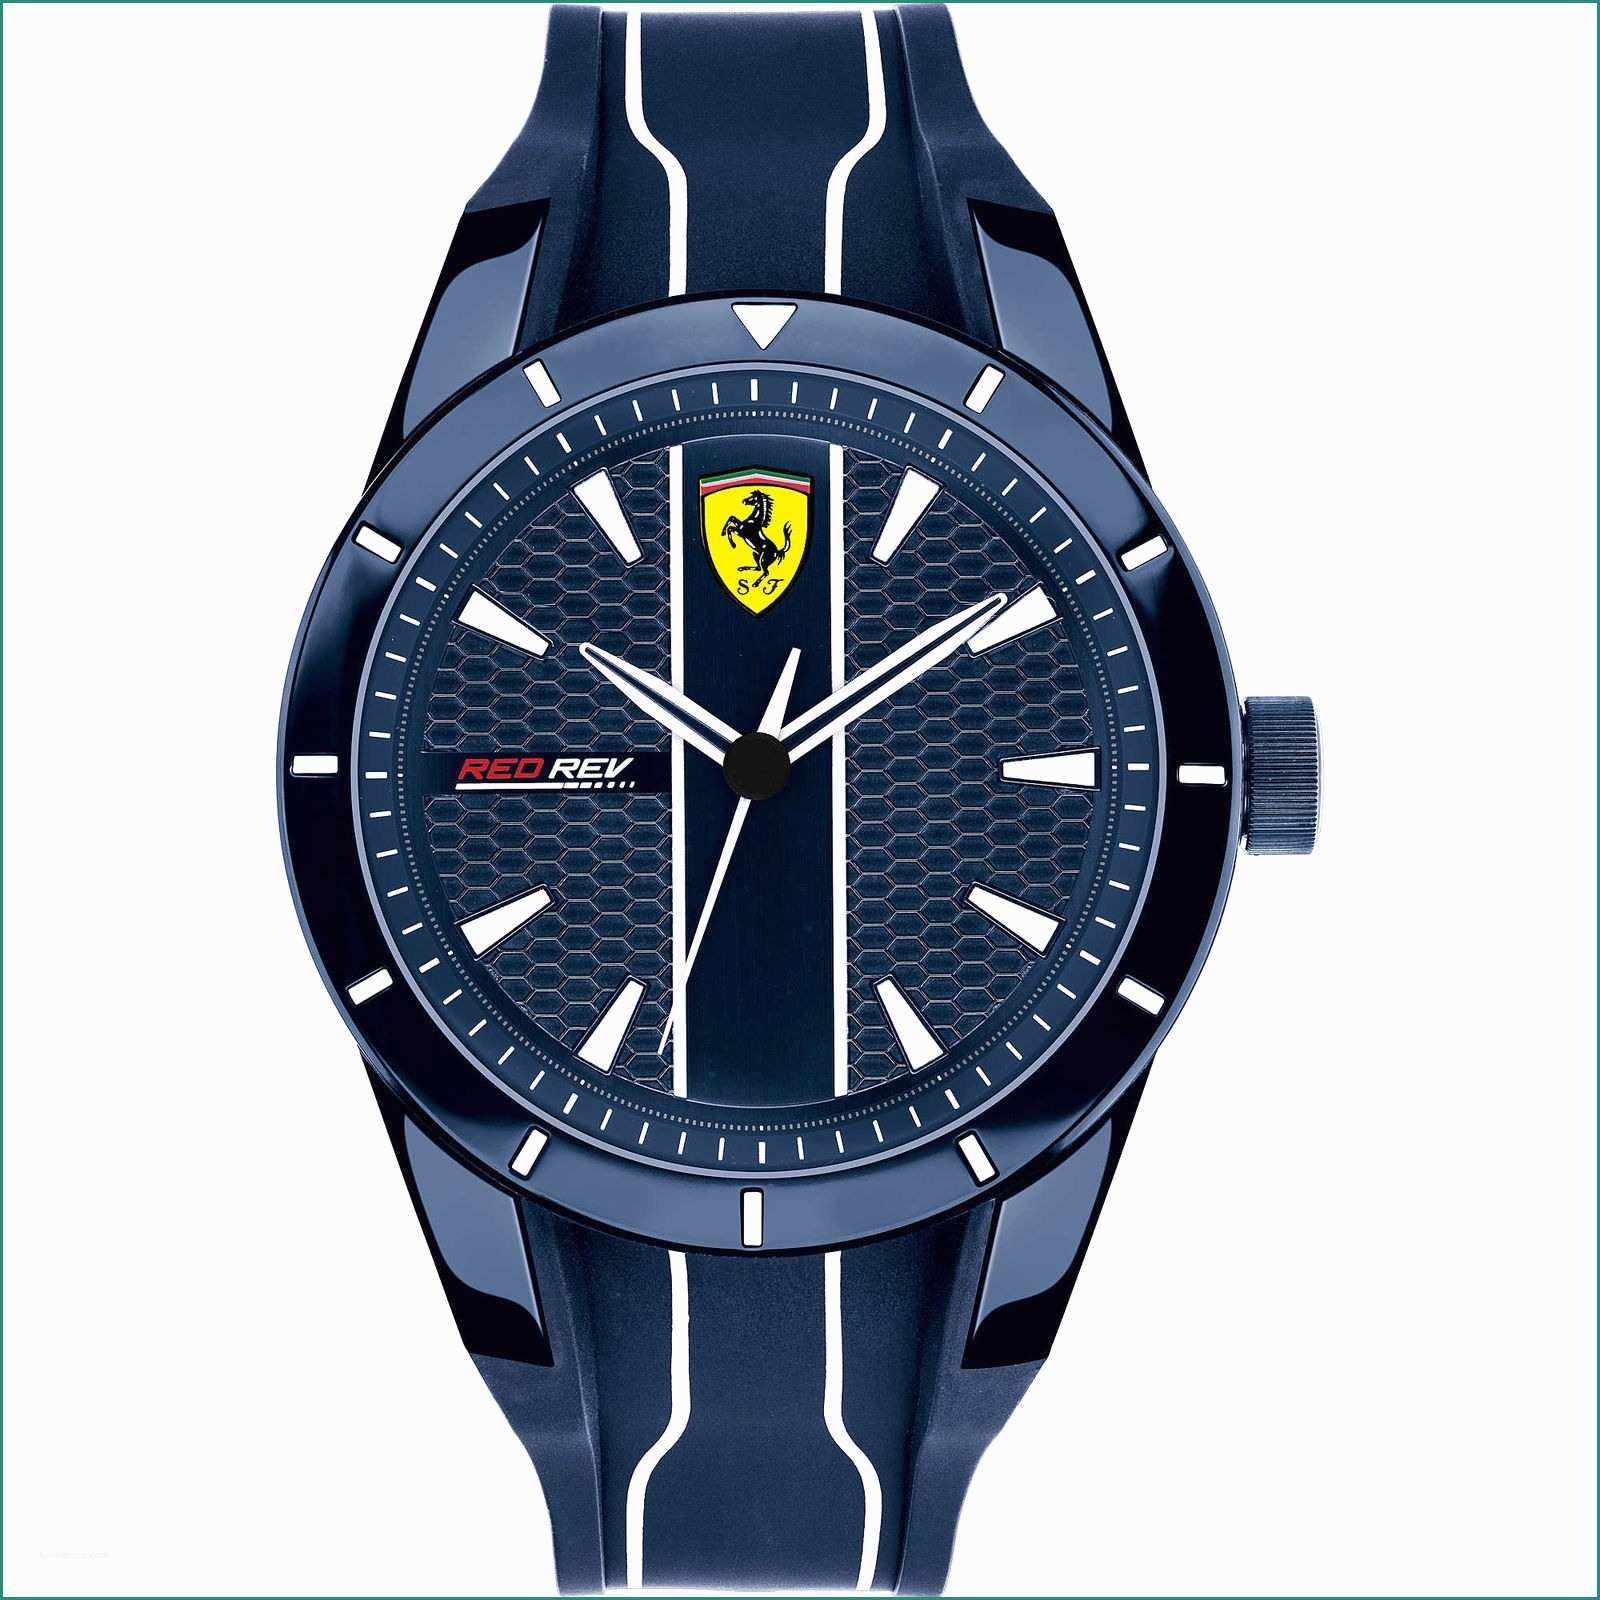 Listino Prezzi Ferrari Bk E Confronta Prezzi E Offerte orologio Ferrari Uomo